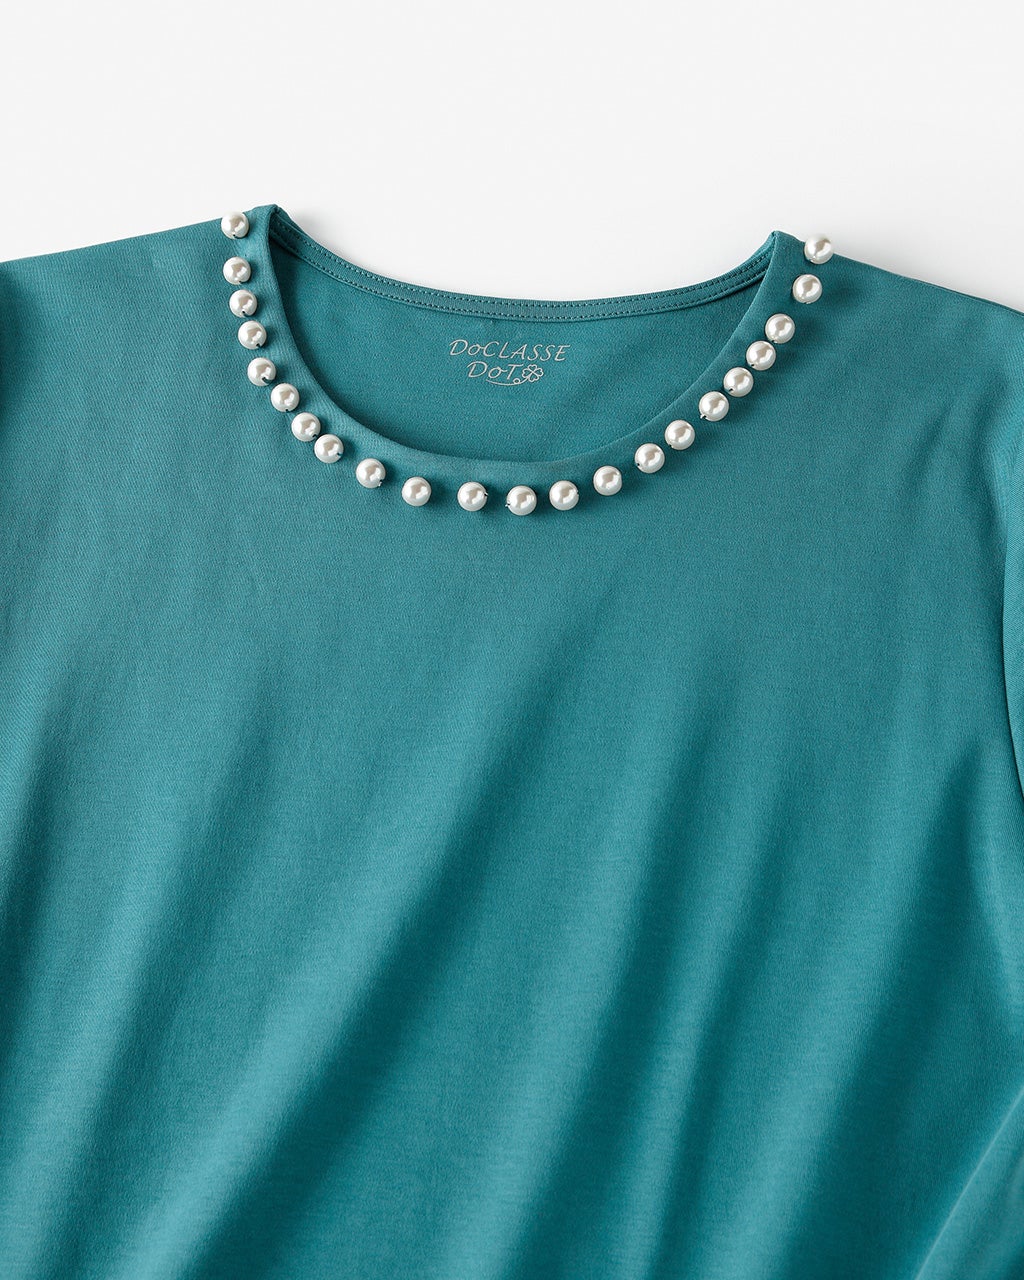 超長綿・パールネック5分袖Tシャツ/40代50代からのレディースファッション通販 DoCLASSE